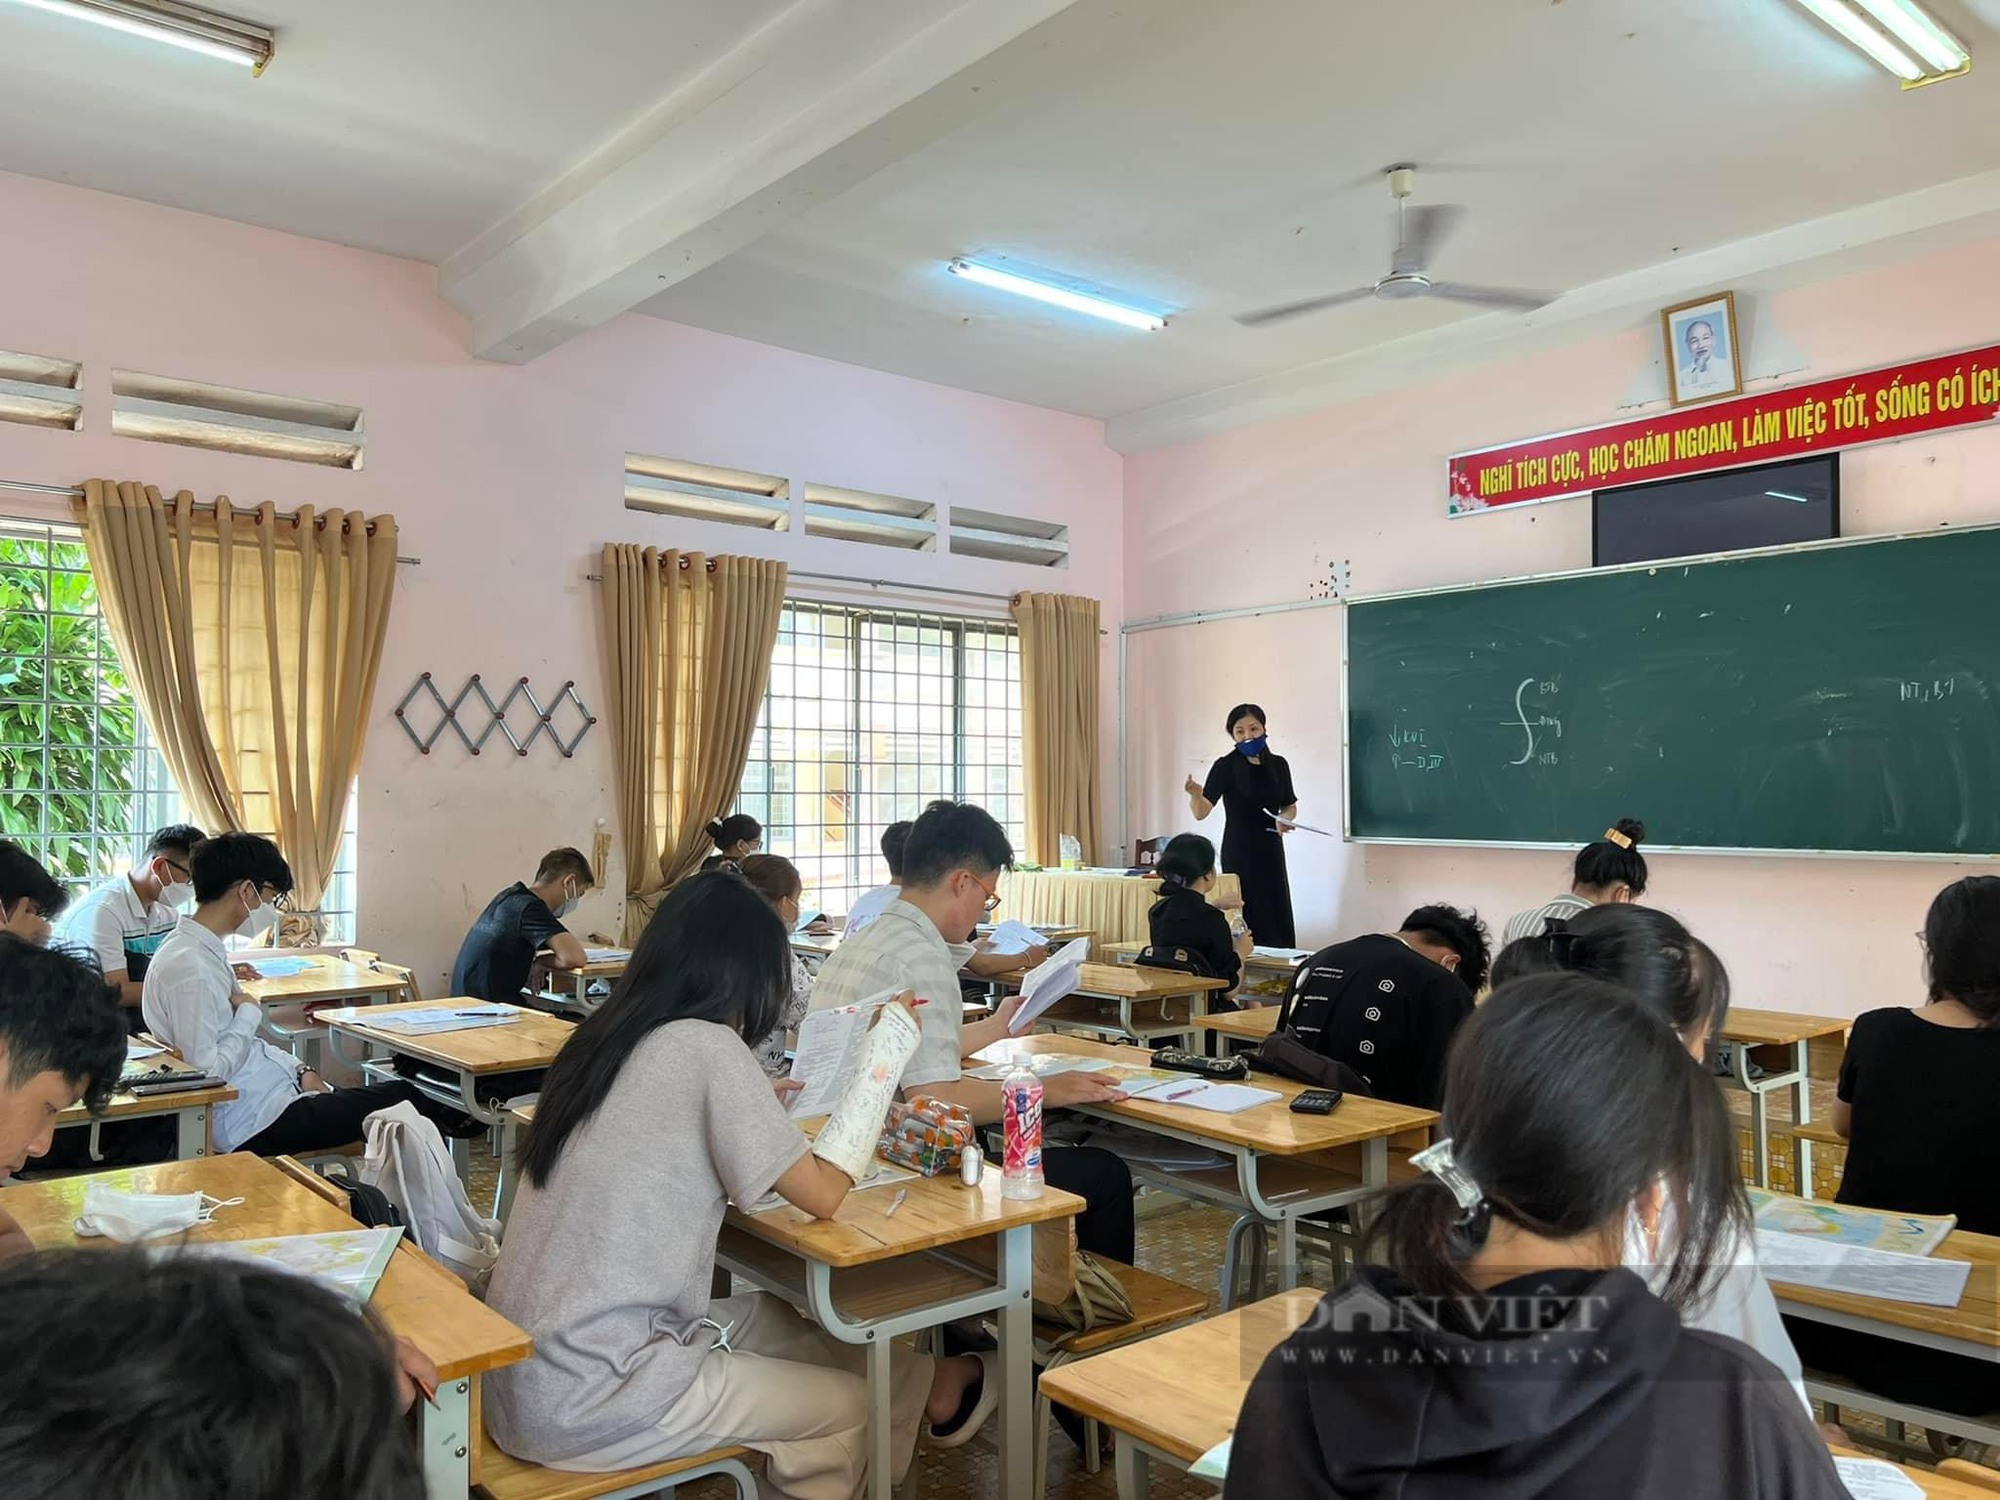 Sở GD&ĐT tỉnh Đắk Lắk chấn chỉnh tình trạng lạm thu năm học mới - Ảnh 1.